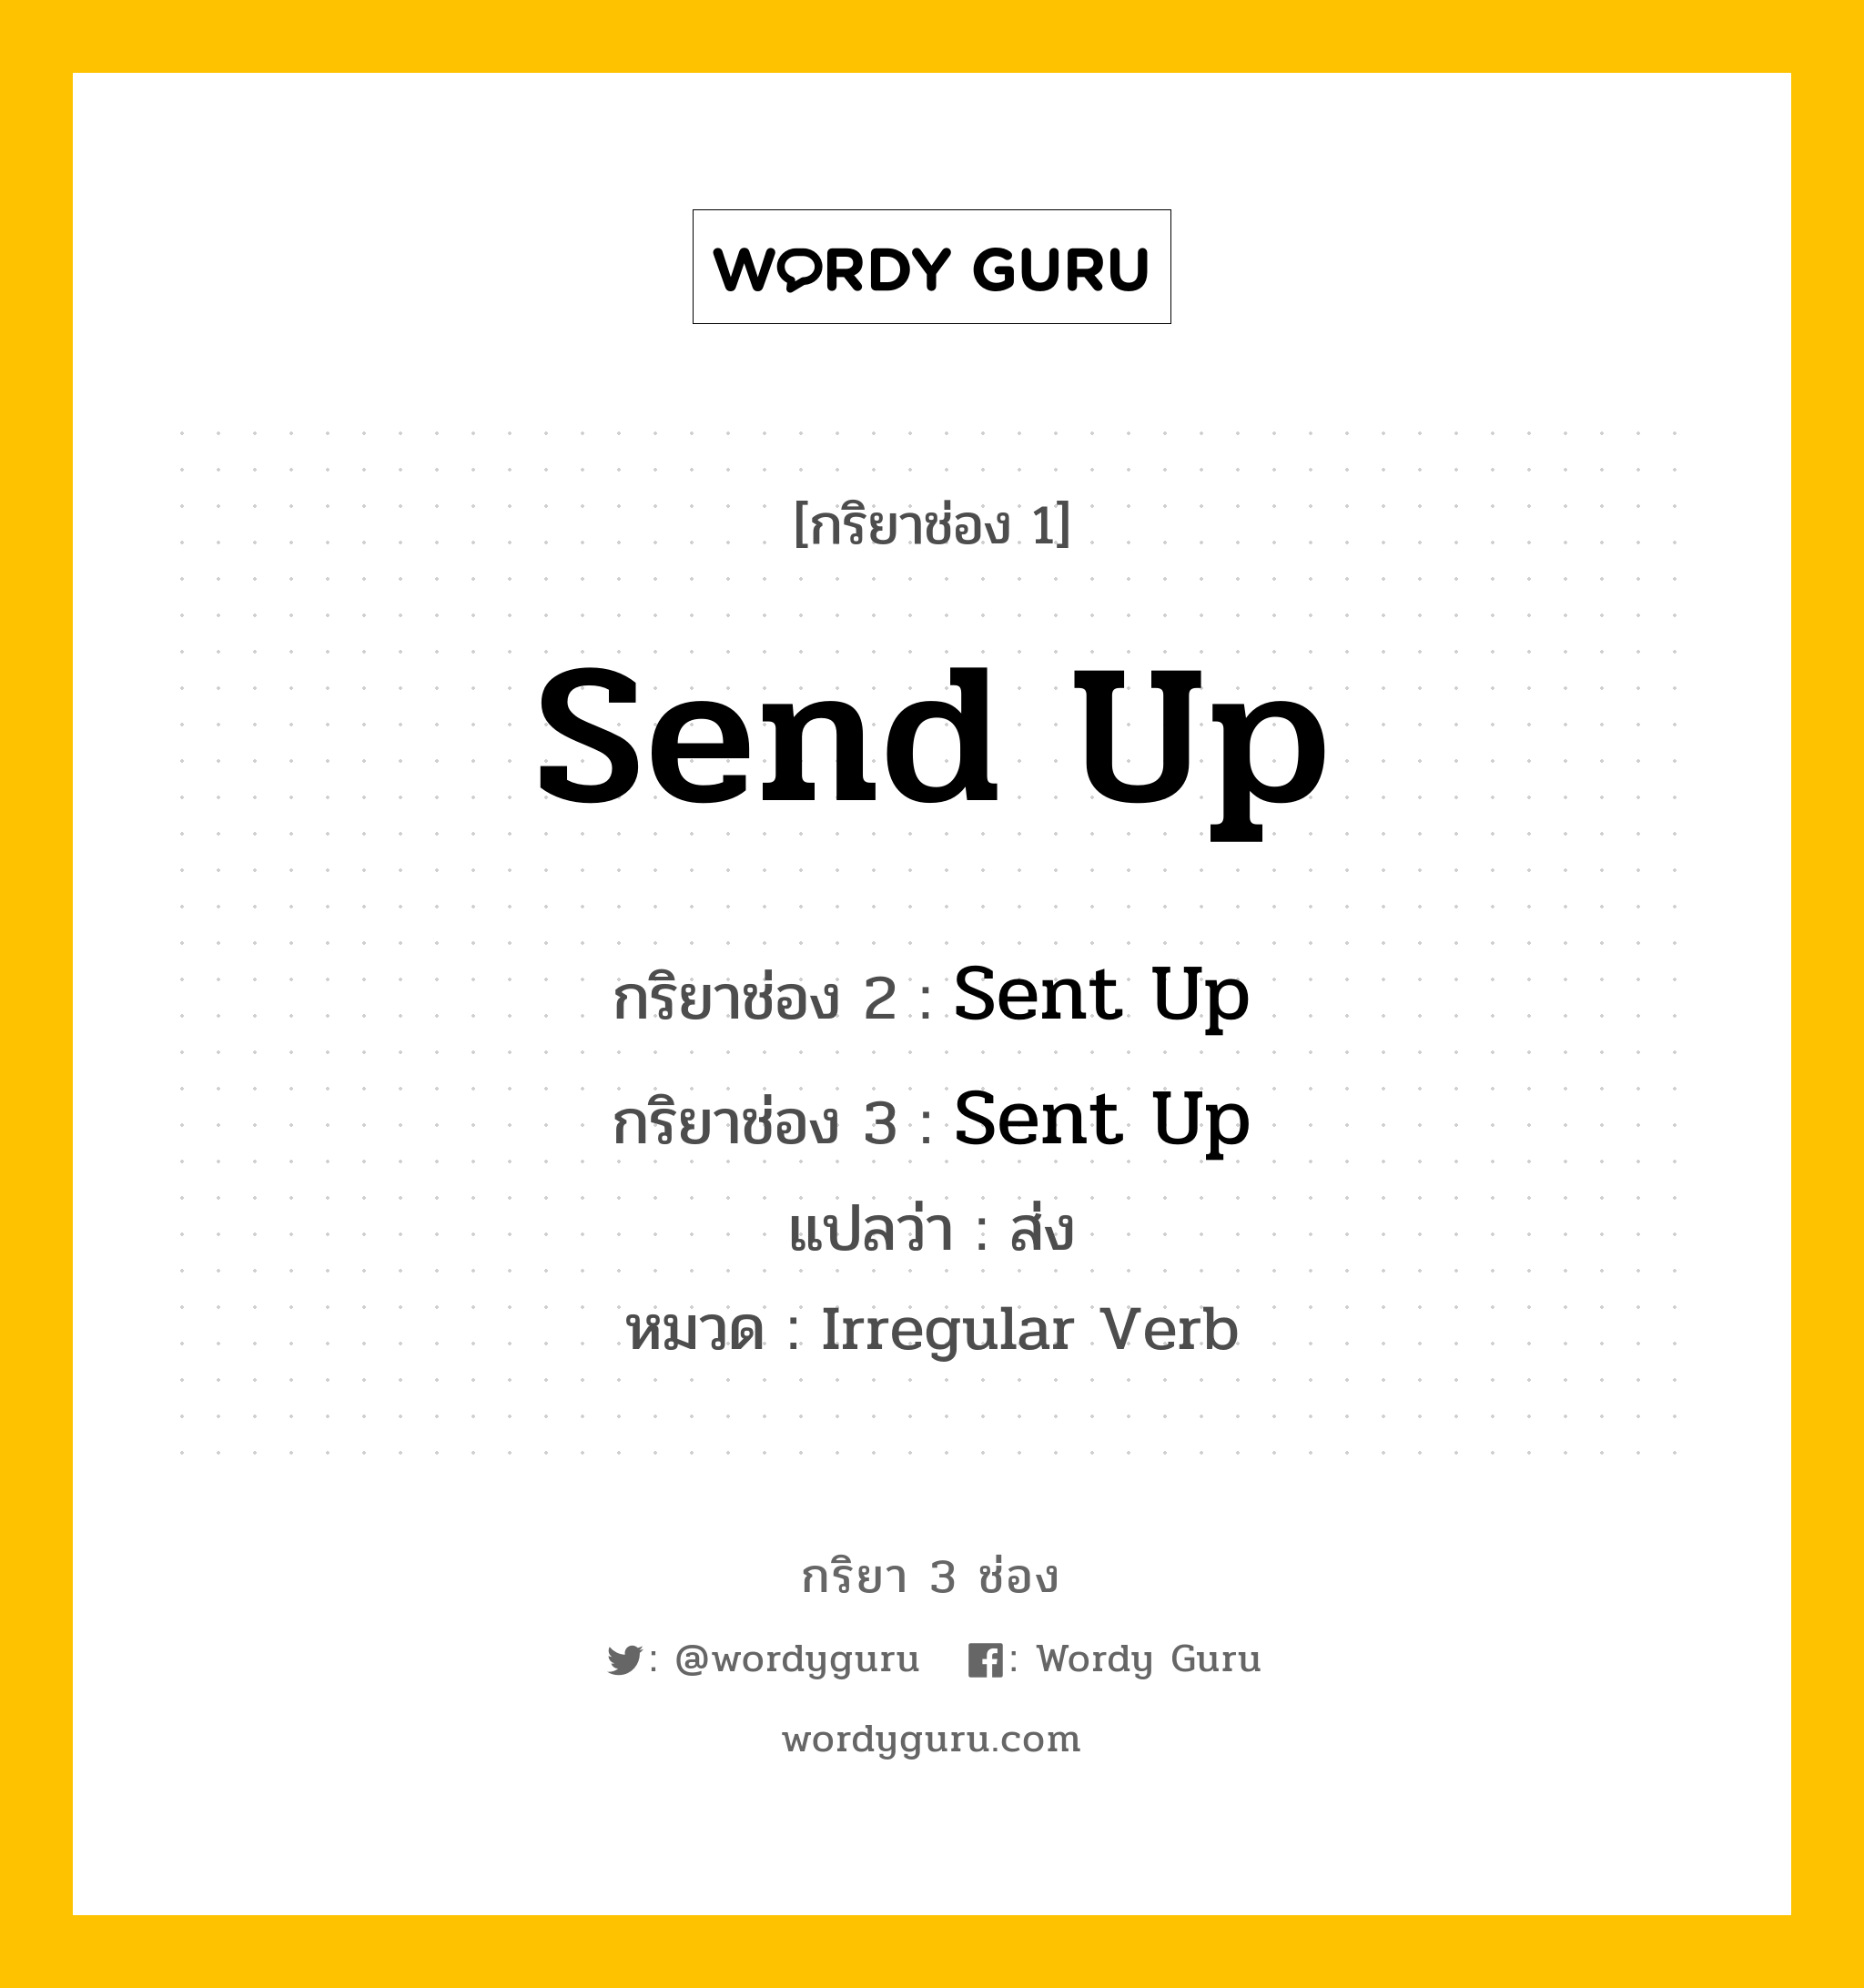 กริยา 3 ช่อง: Send Up ช่อง 2 Send Up ช่อง 3 คืออะไร, กริยาช่อง 1 Send Up กริยาช่อง 2 Sent Up กริยาช่อง 3 Sent Up แปลว่า ส่ง หมวด Irregular Verb หมวด Irregular Verb